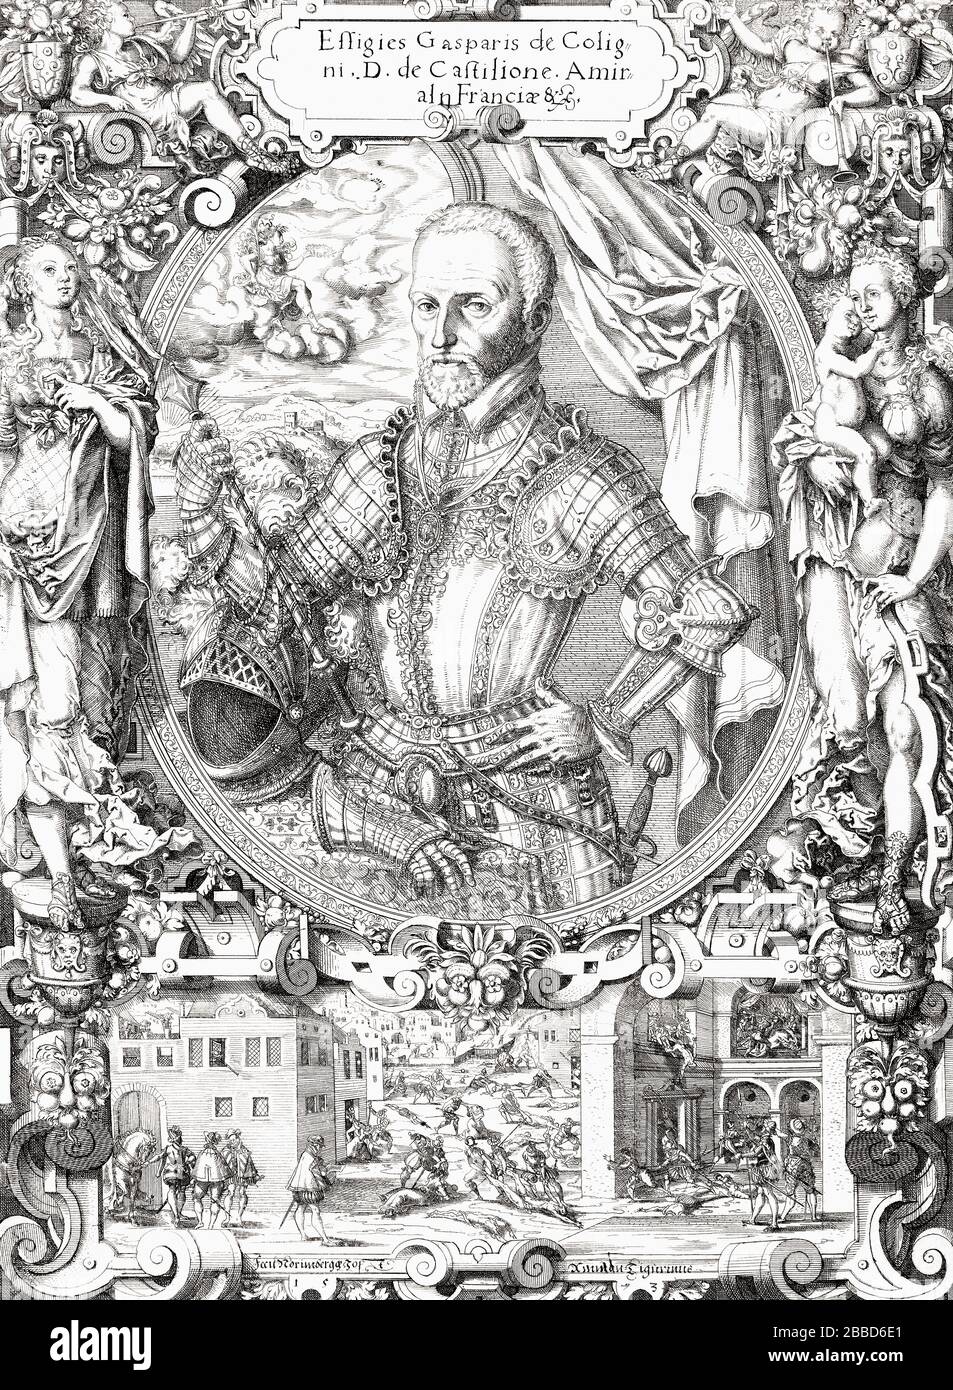 Gaspard de Coligny, Seigneu de Châtillon, 1519 - 1572. Französischer Adeliger. Er war während der französischen Religionskriege Admiral von Frankreich und Anführer der Hugenotten. Stockfoto